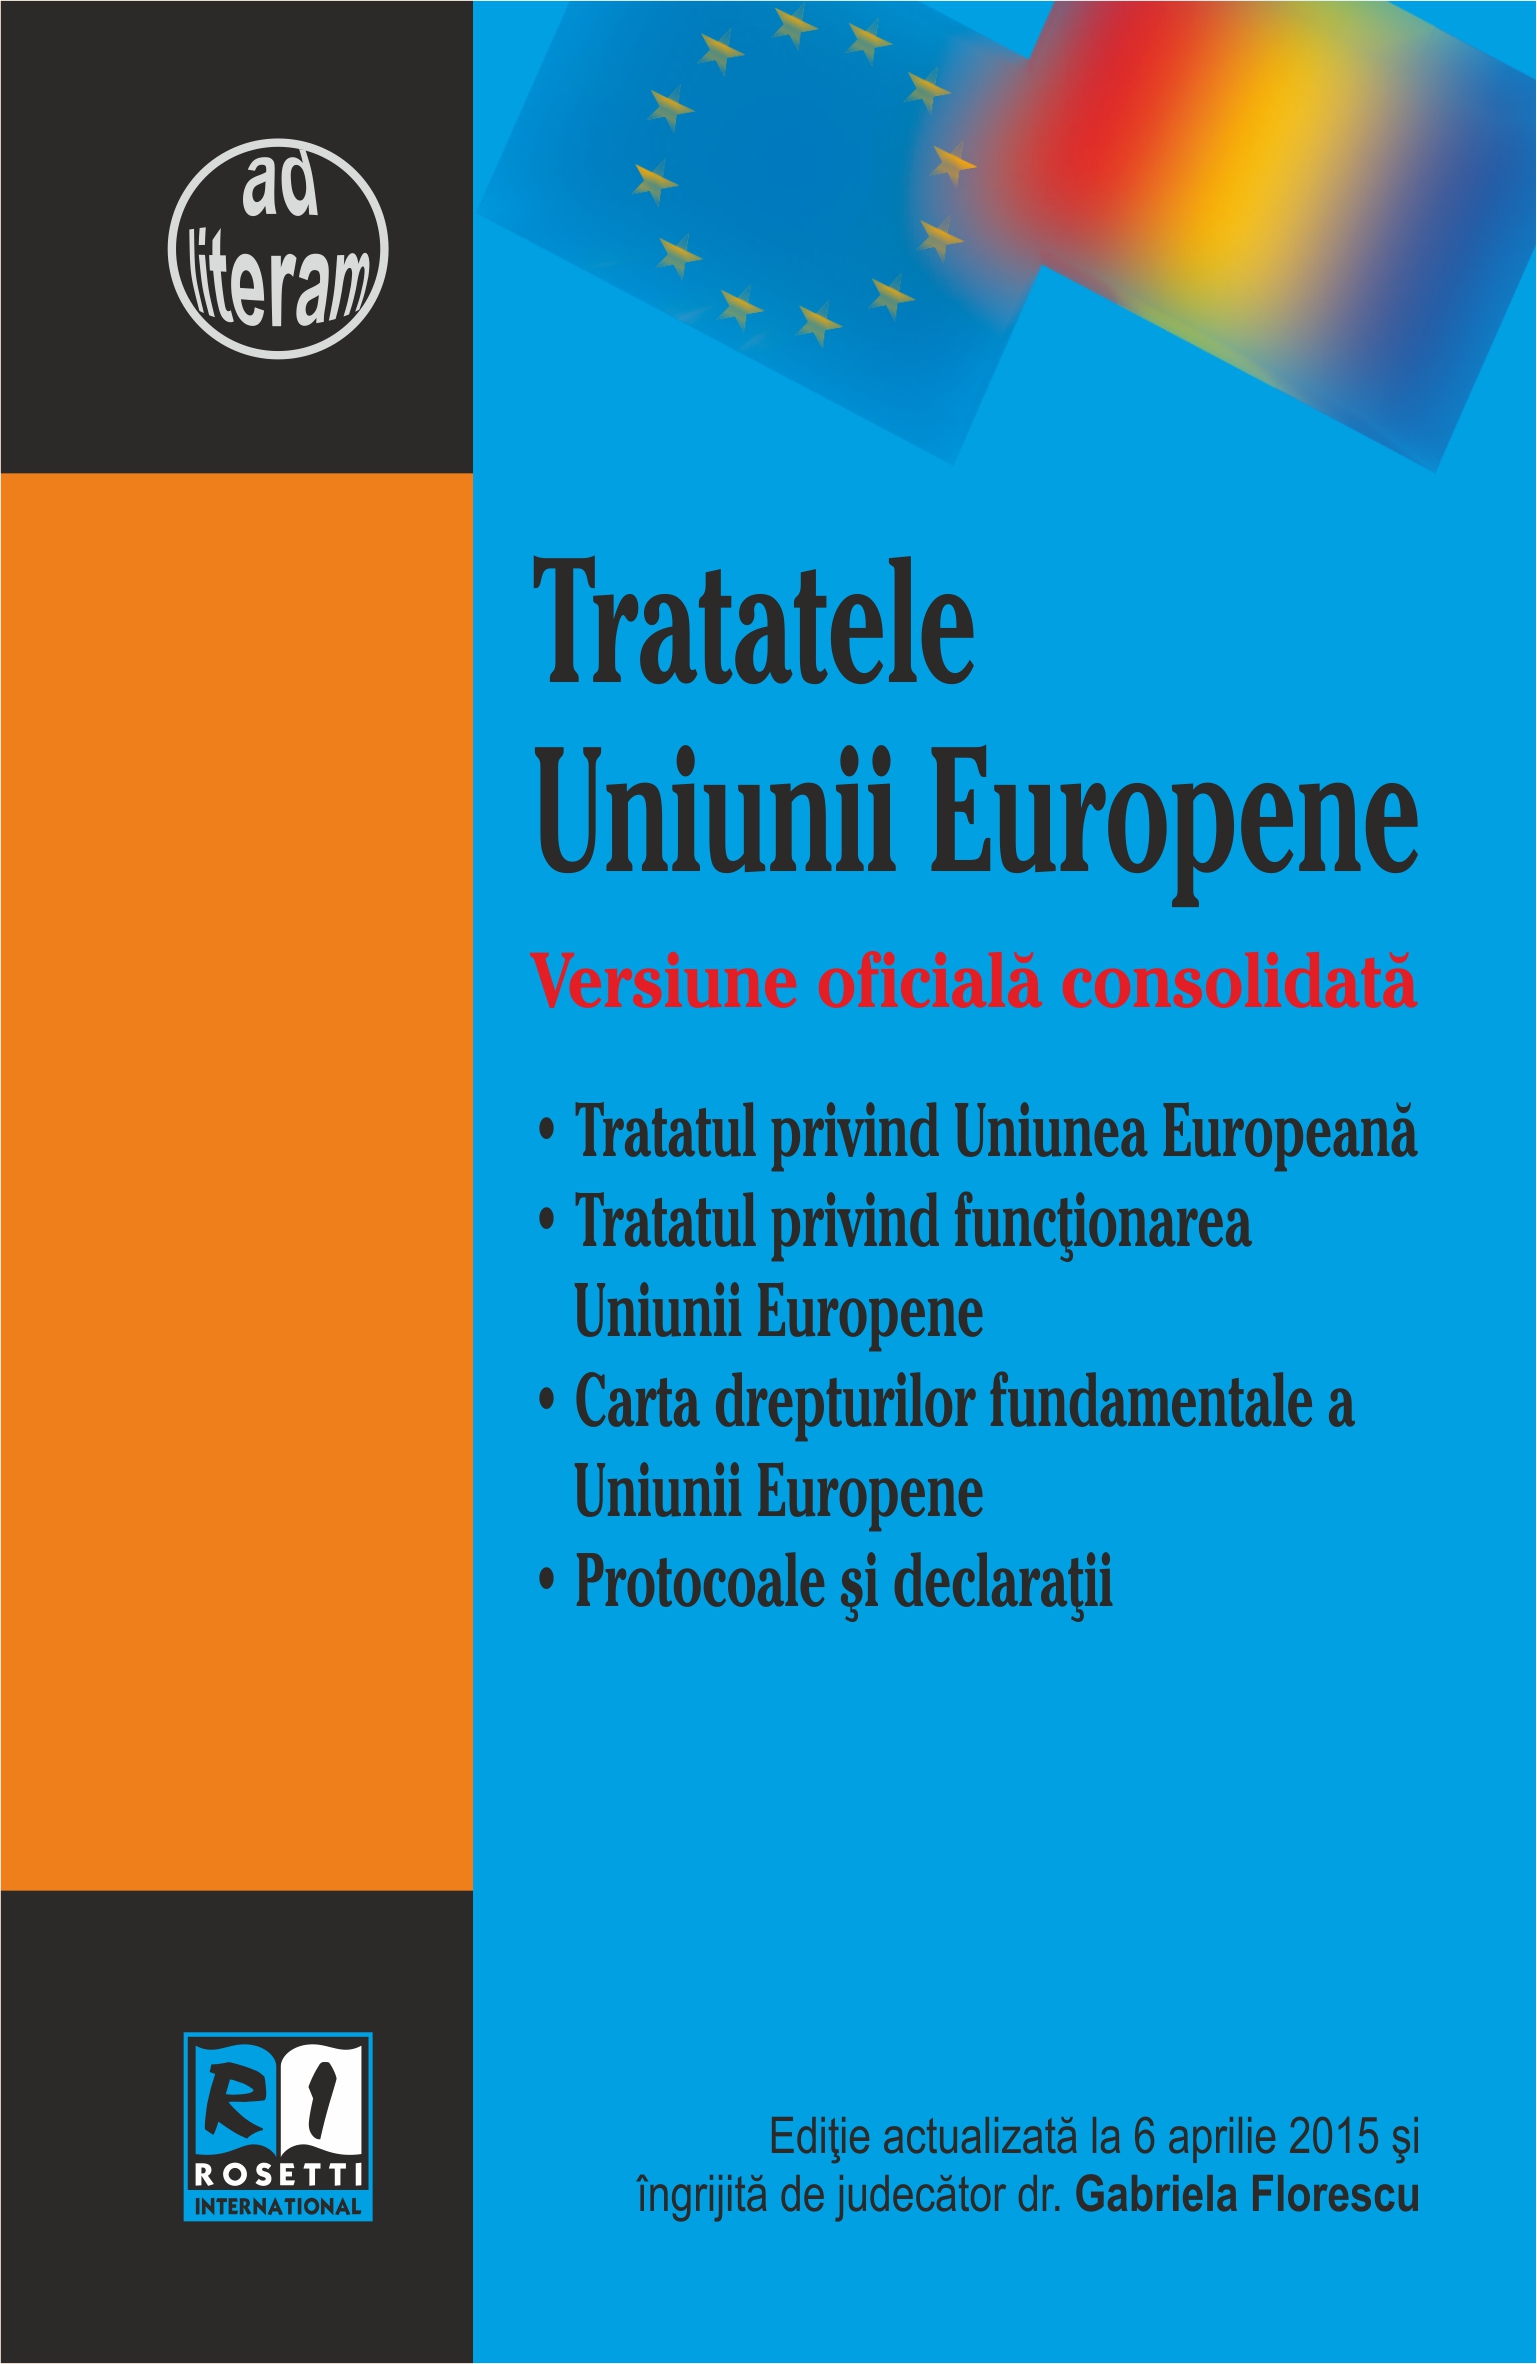 Tratatele Uniunii Europene Act. 6 Aprilie 2015